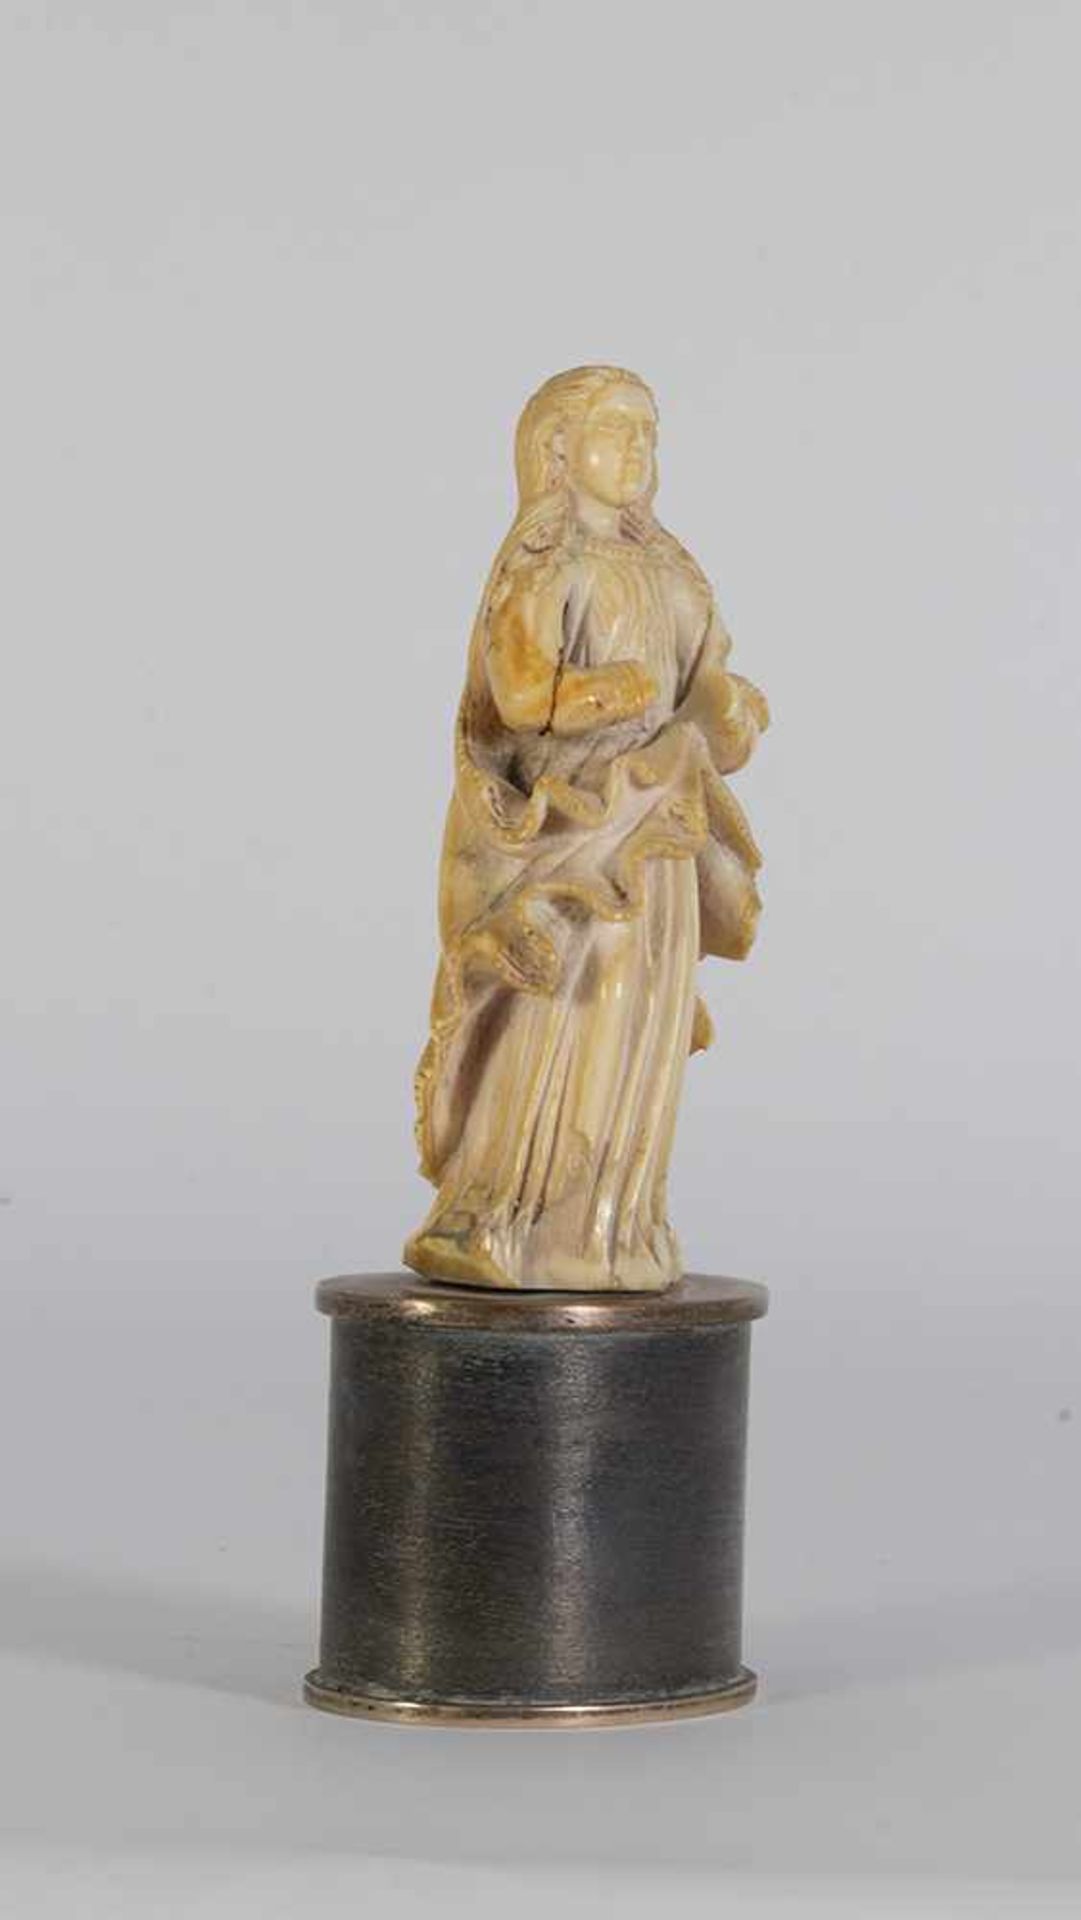 Escuela indo-portuguesa del siglo XVIII. "Virgen".Escultura en marfil tallado. Se adjunta documento